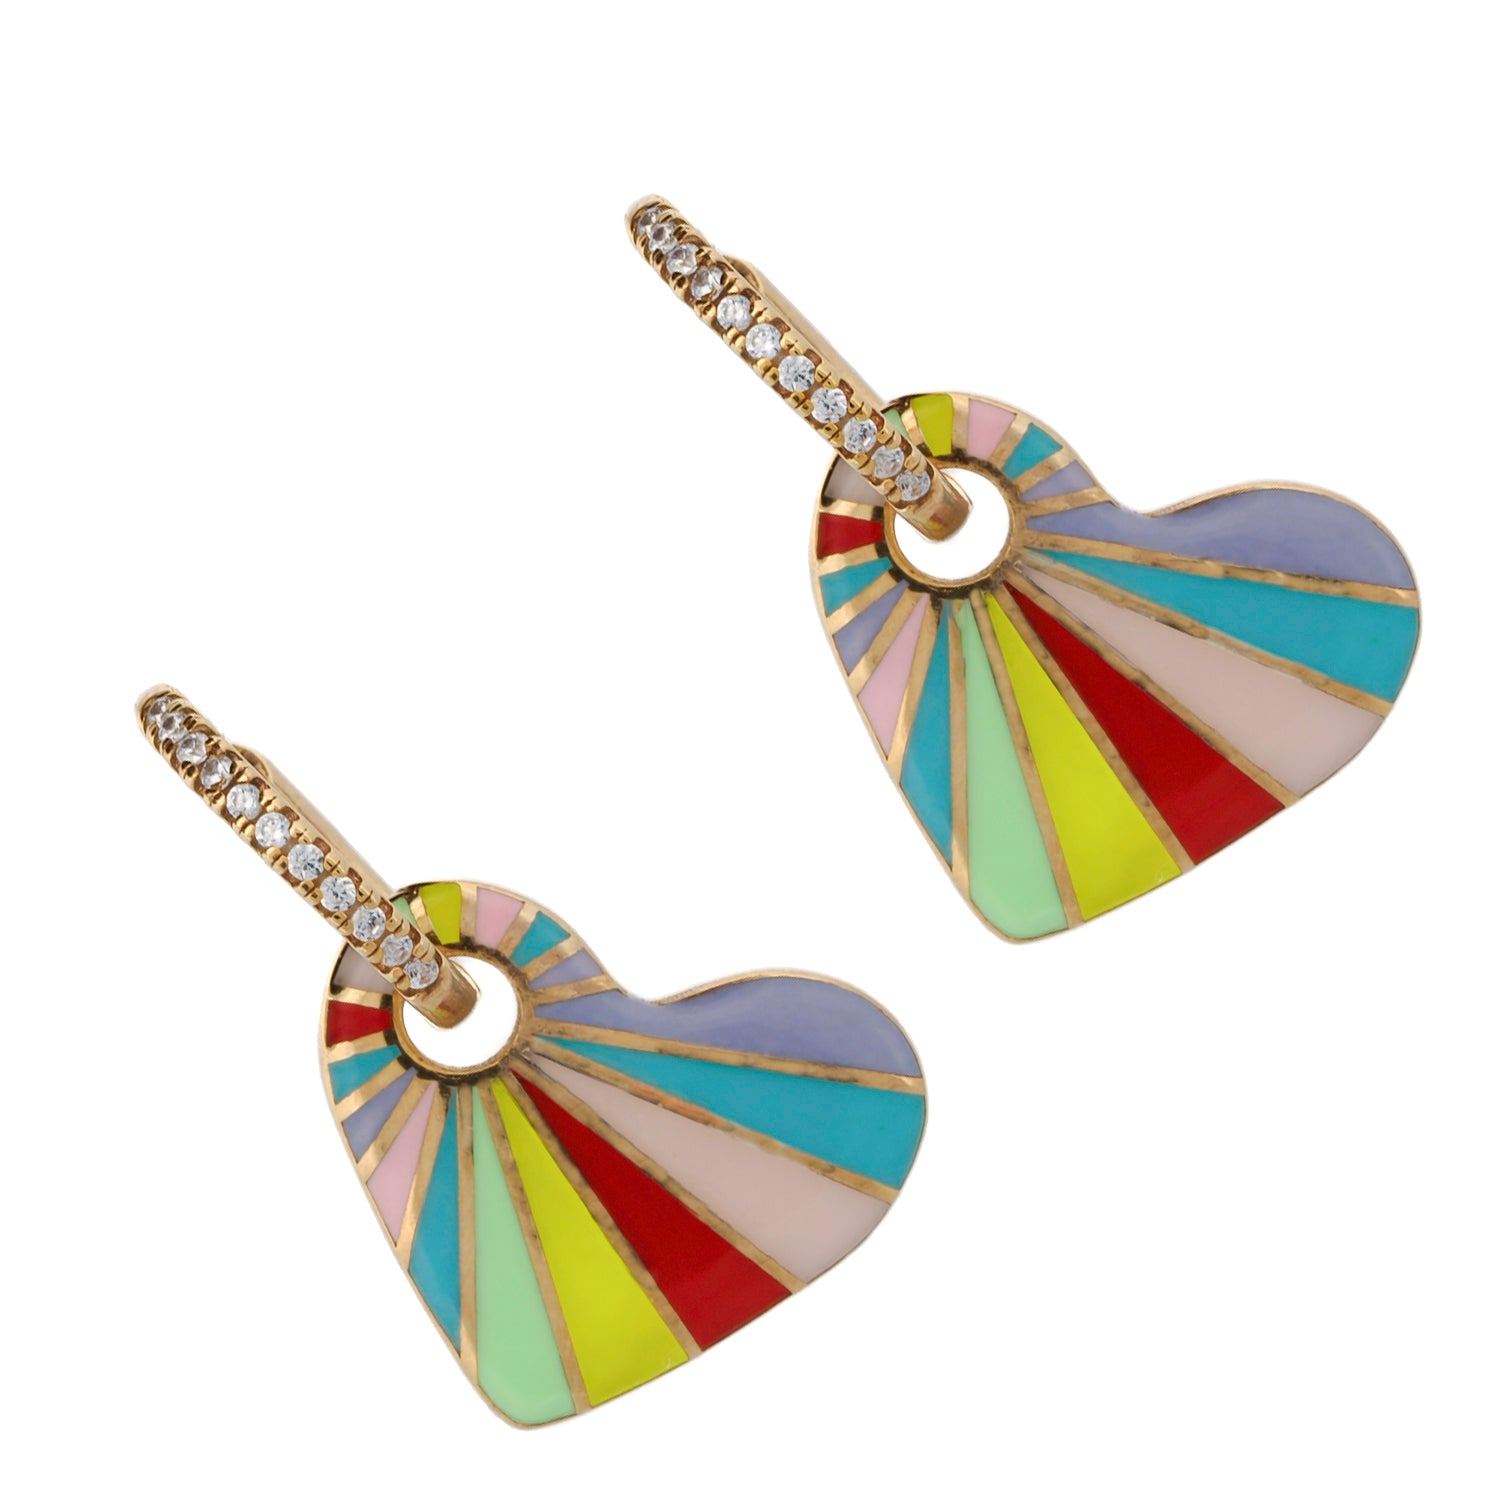 Elegant Gold Hoop Earrings with Colorful Enamel Hearts